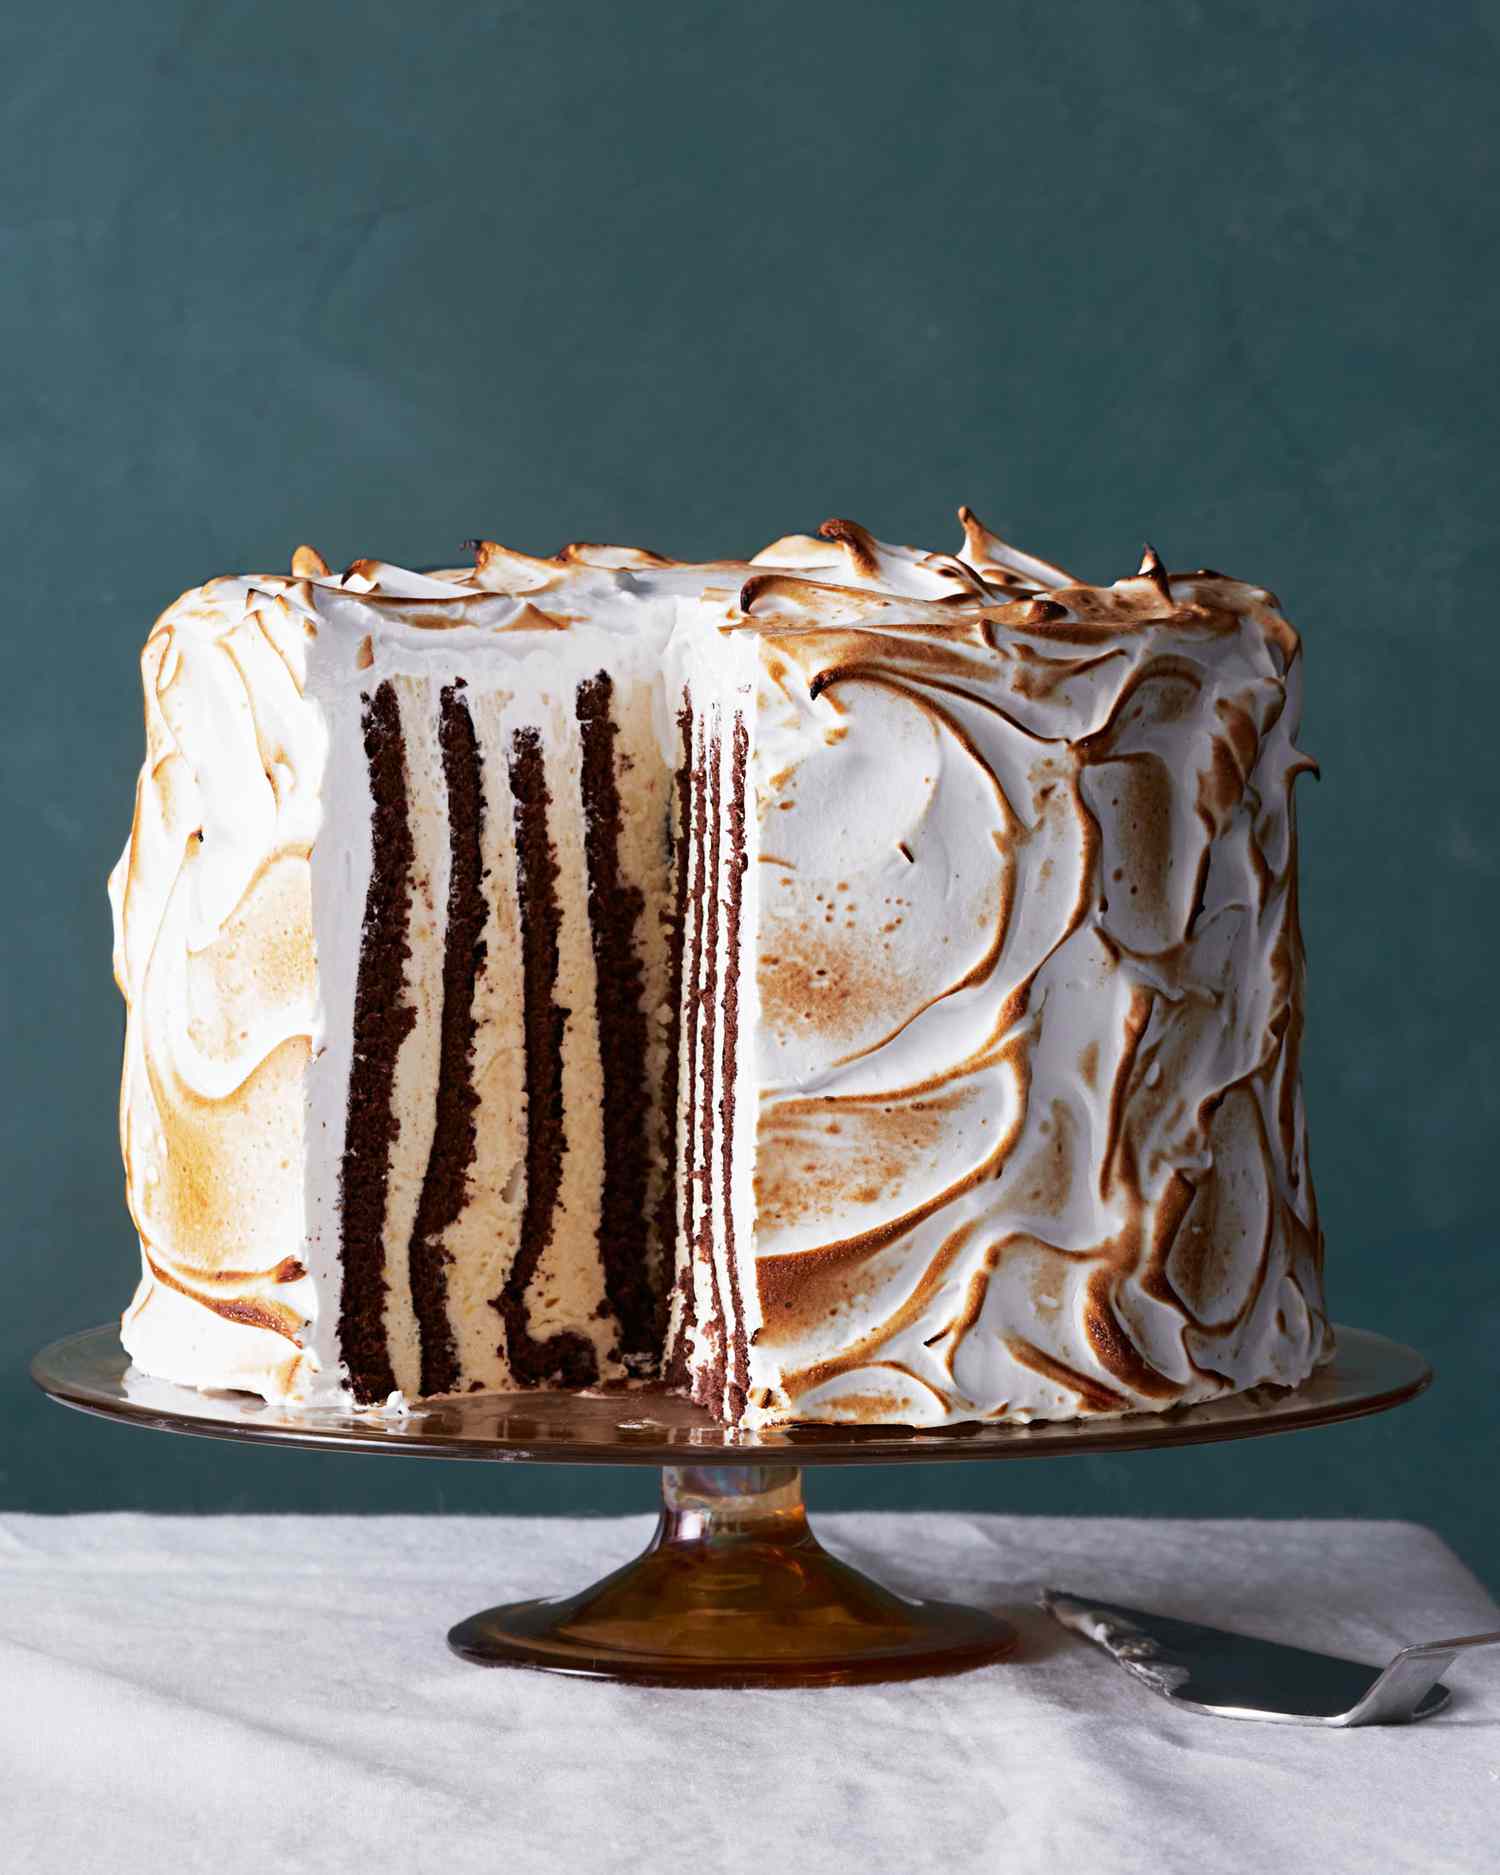 eggnog-semifreddo-genoise-cake-with-meringue-frosting-102797709.jpg